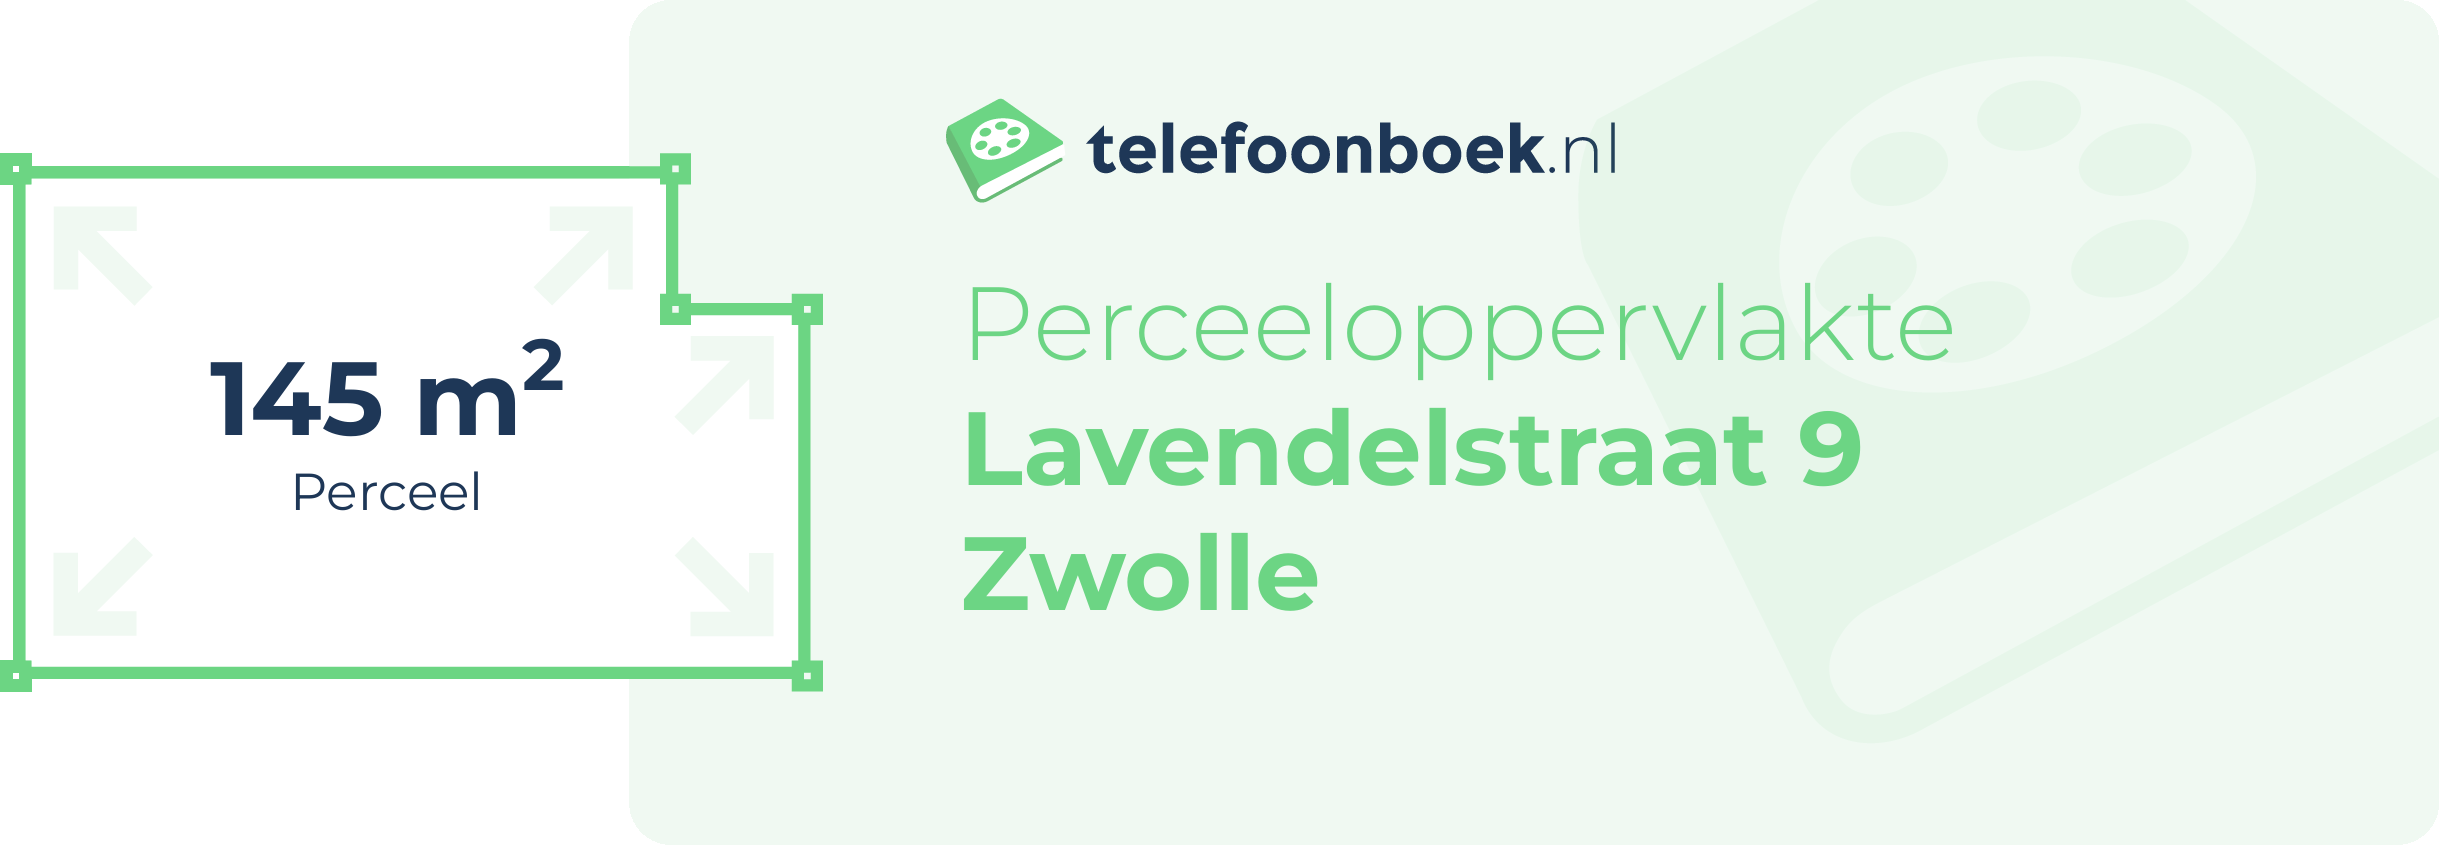 Perceeloppervlakte Lavendelstraat 9 Zwolle